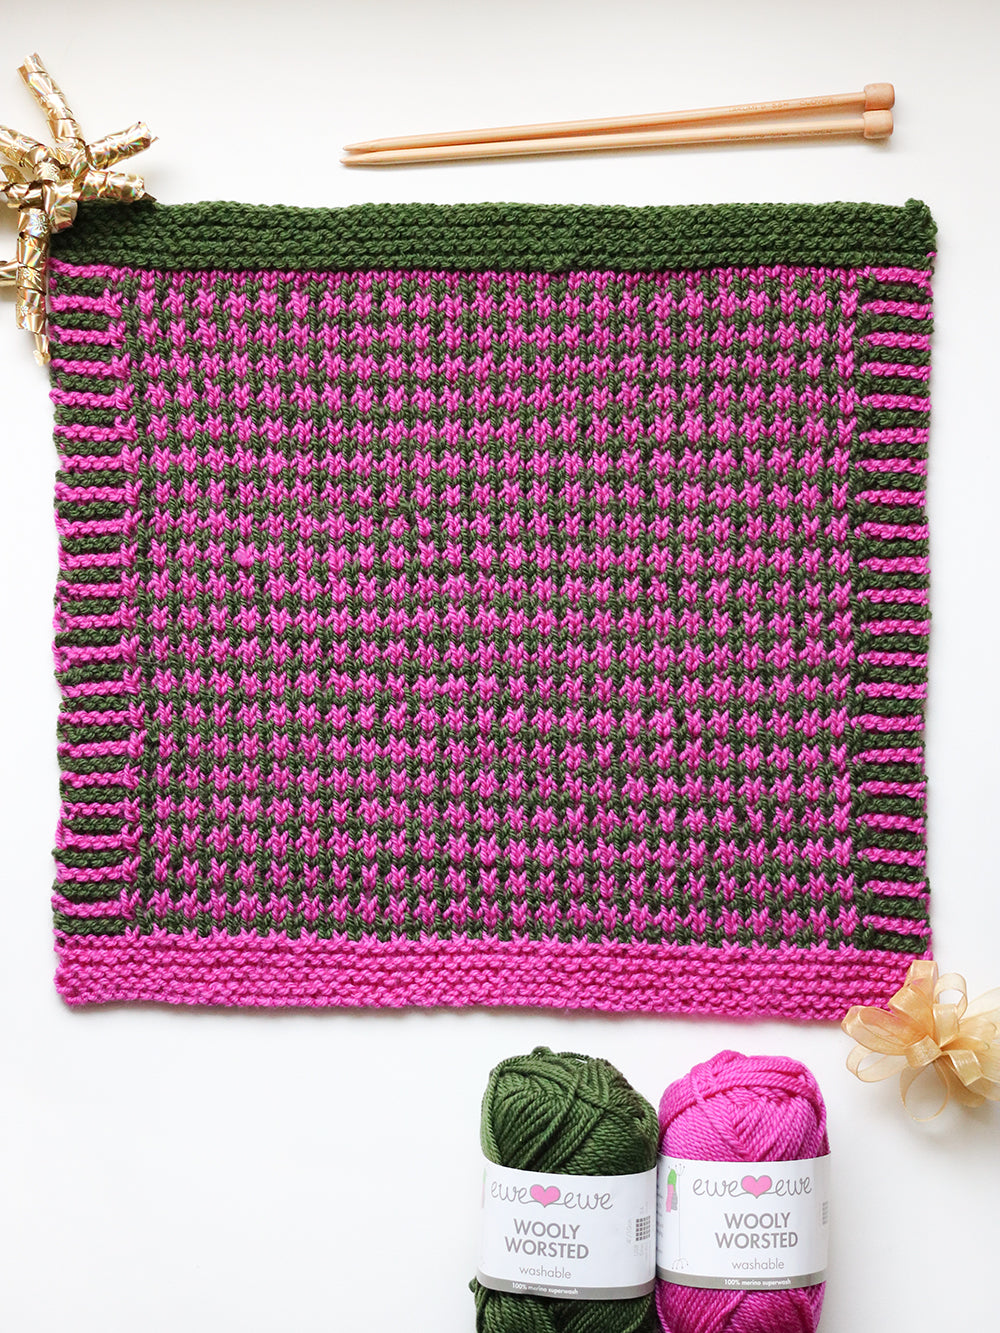 Celebration Blanket – Block 10: Interweaving Mosaic FREE Knitting Pattern PDF